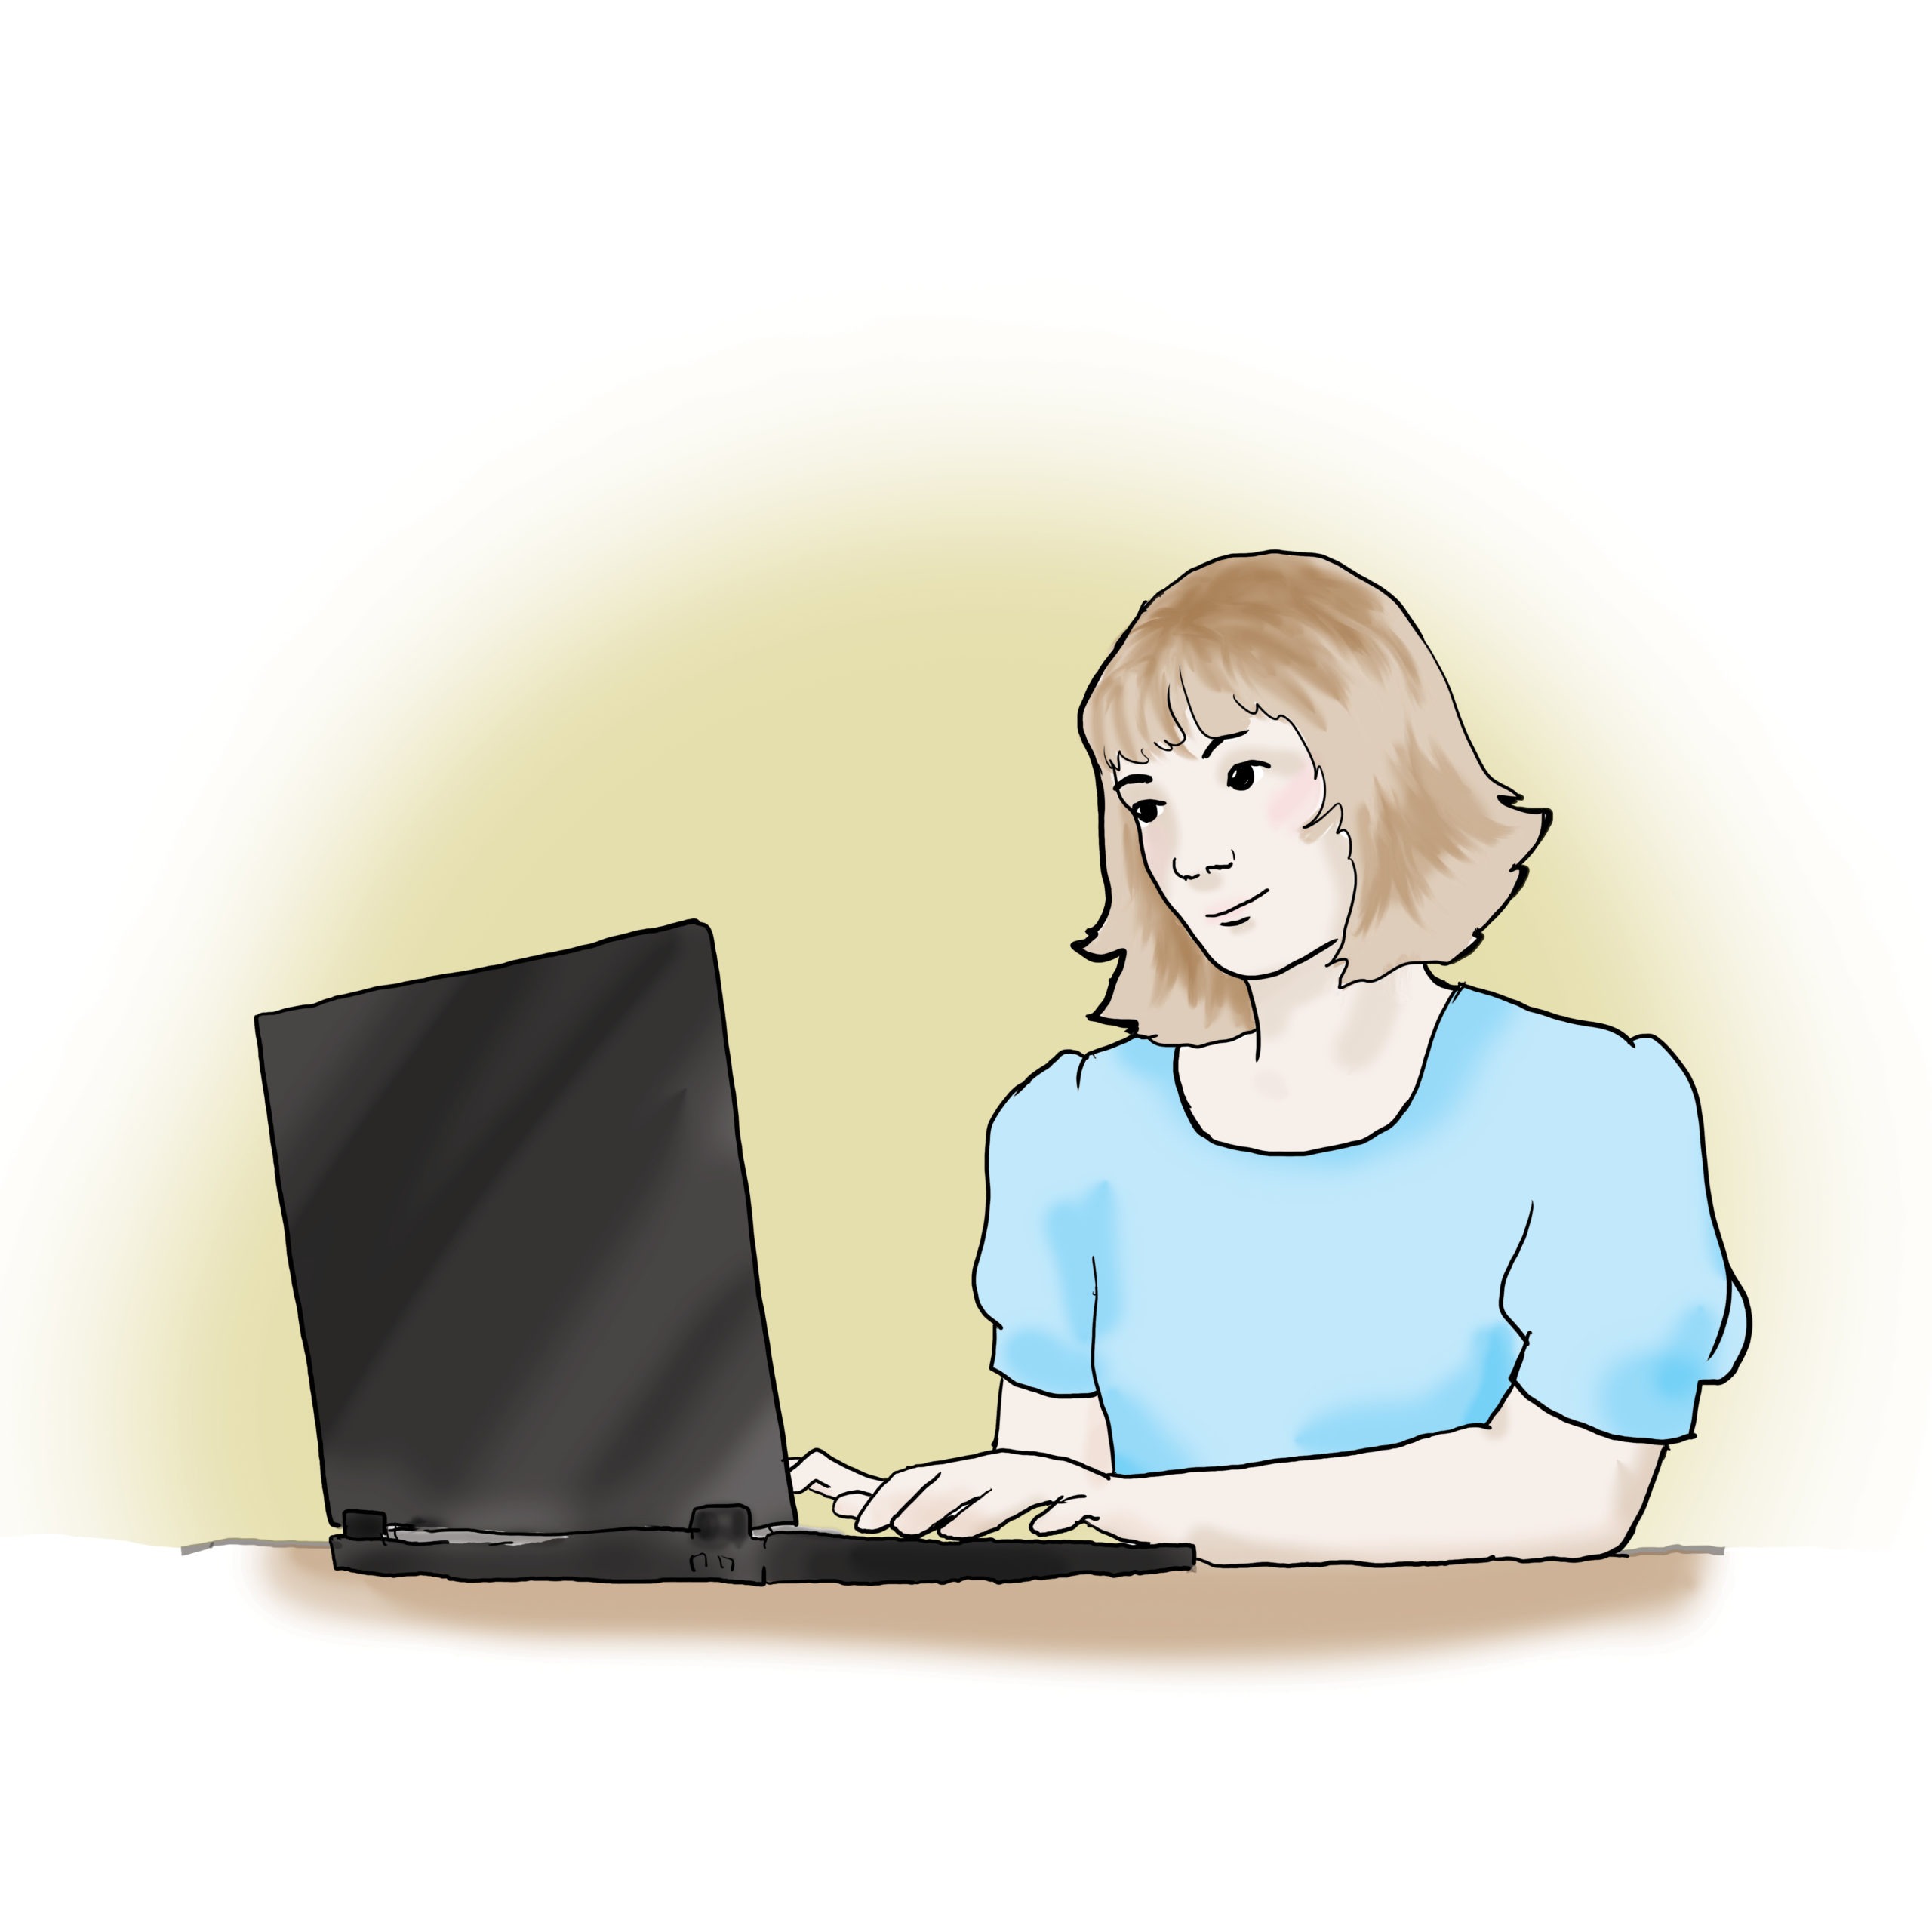 Das Bild zeigt eine Frau. Die Frau sitzt vor einem Laptop.